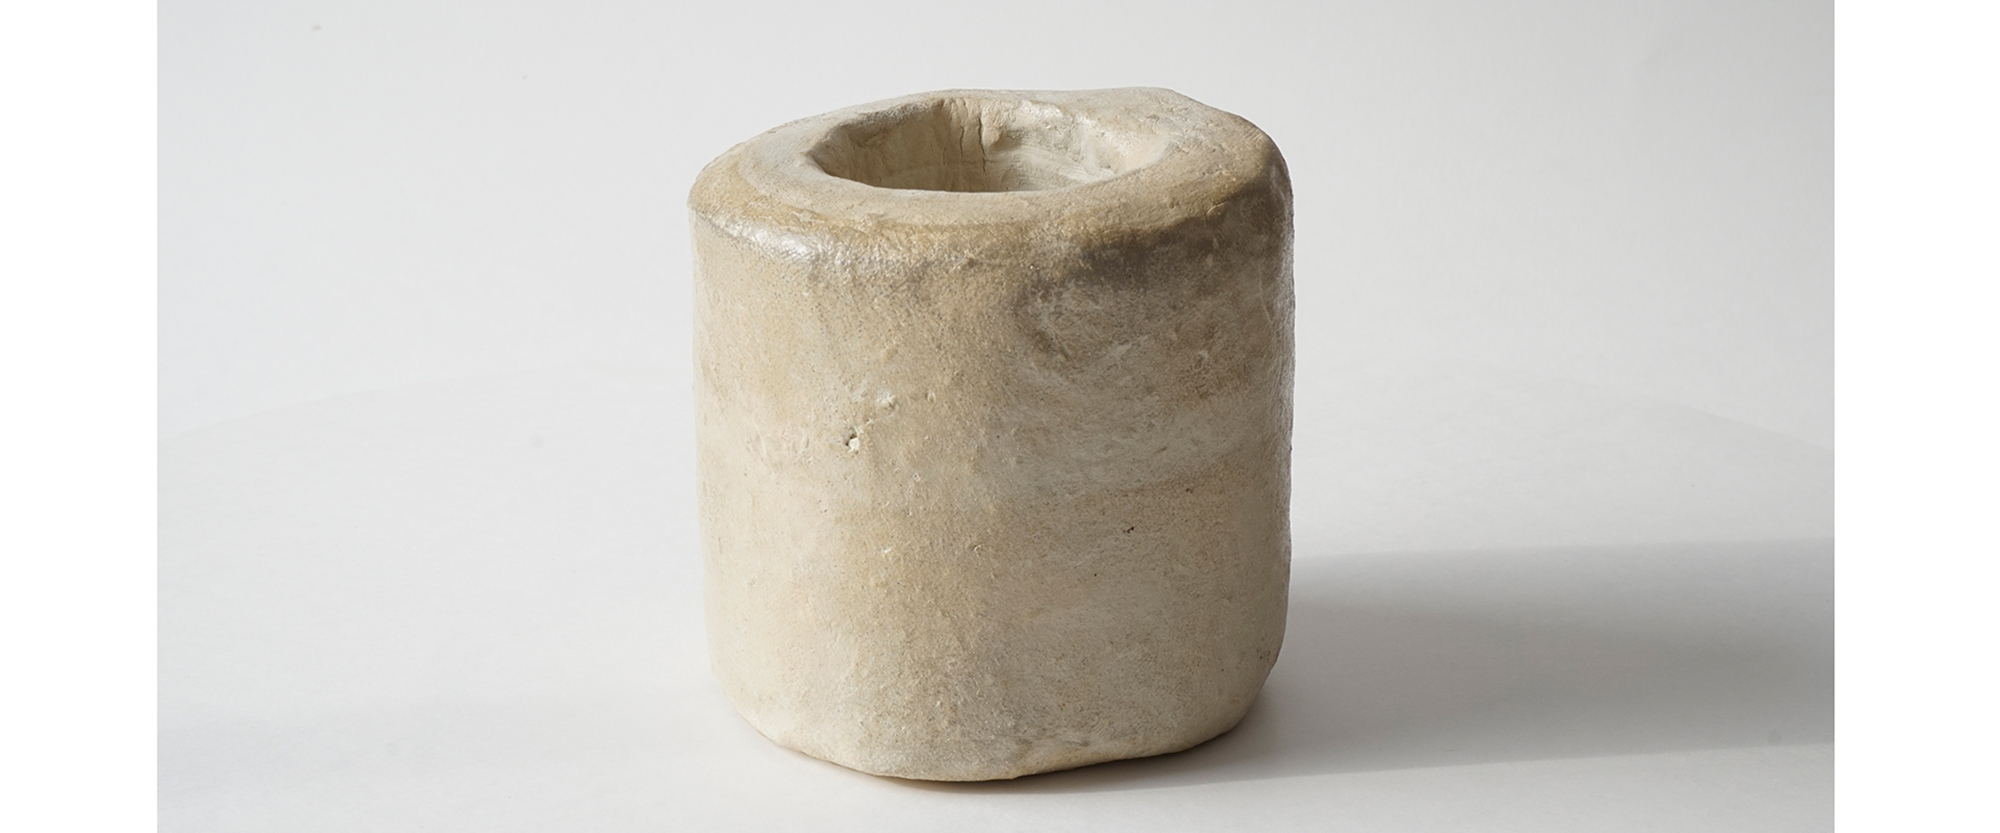 Z031 - 2016, Zylinder Steinzeug, Porzellanengobe, Höhe 9 cm, Durchmesser 9 cm